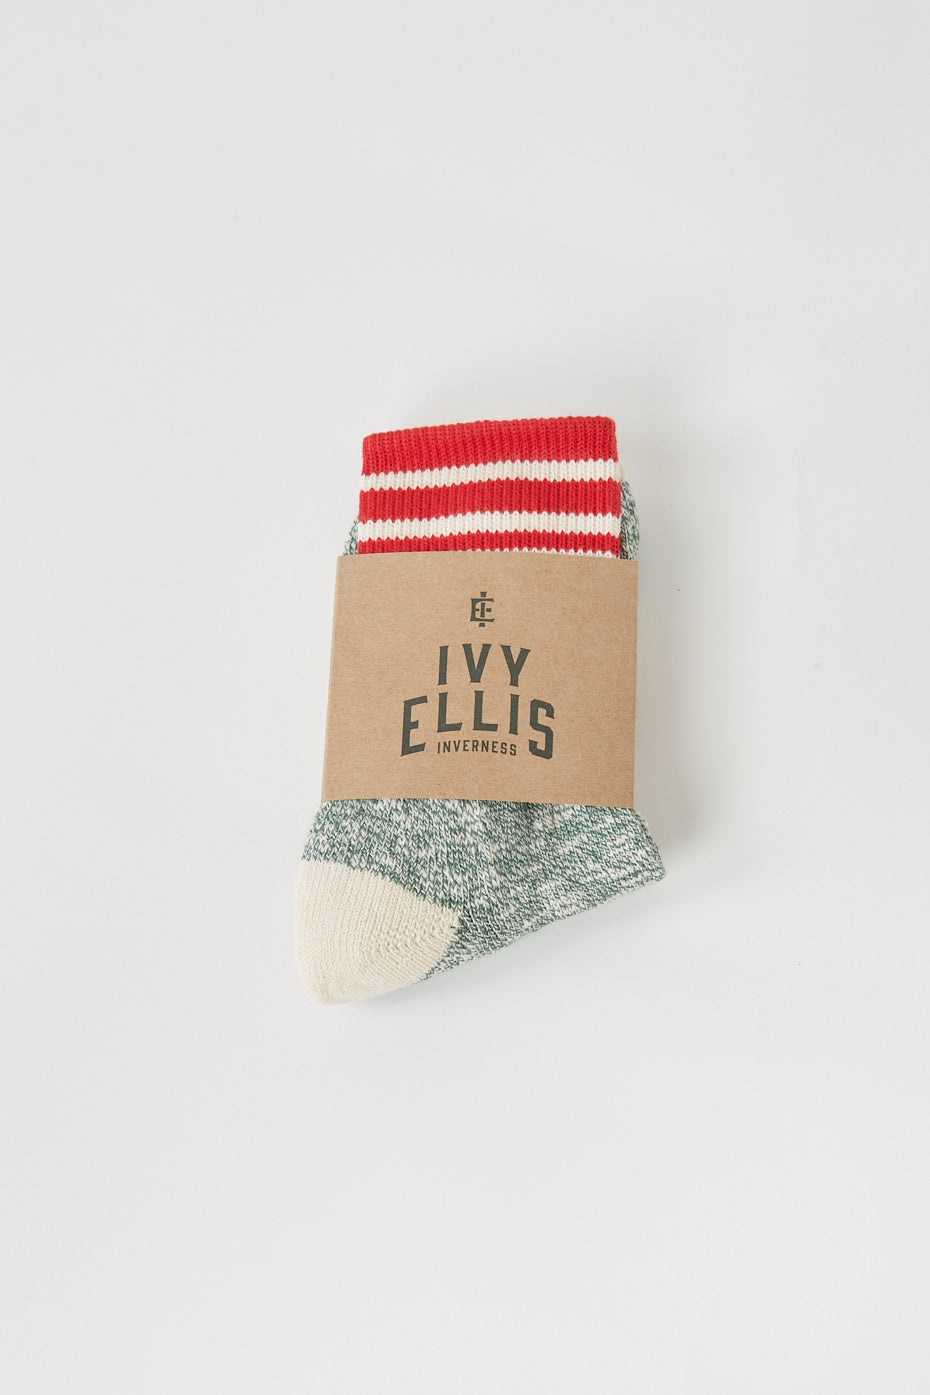 Ivy Ellis Melvich 1/4 Slubbed Ladies Socks